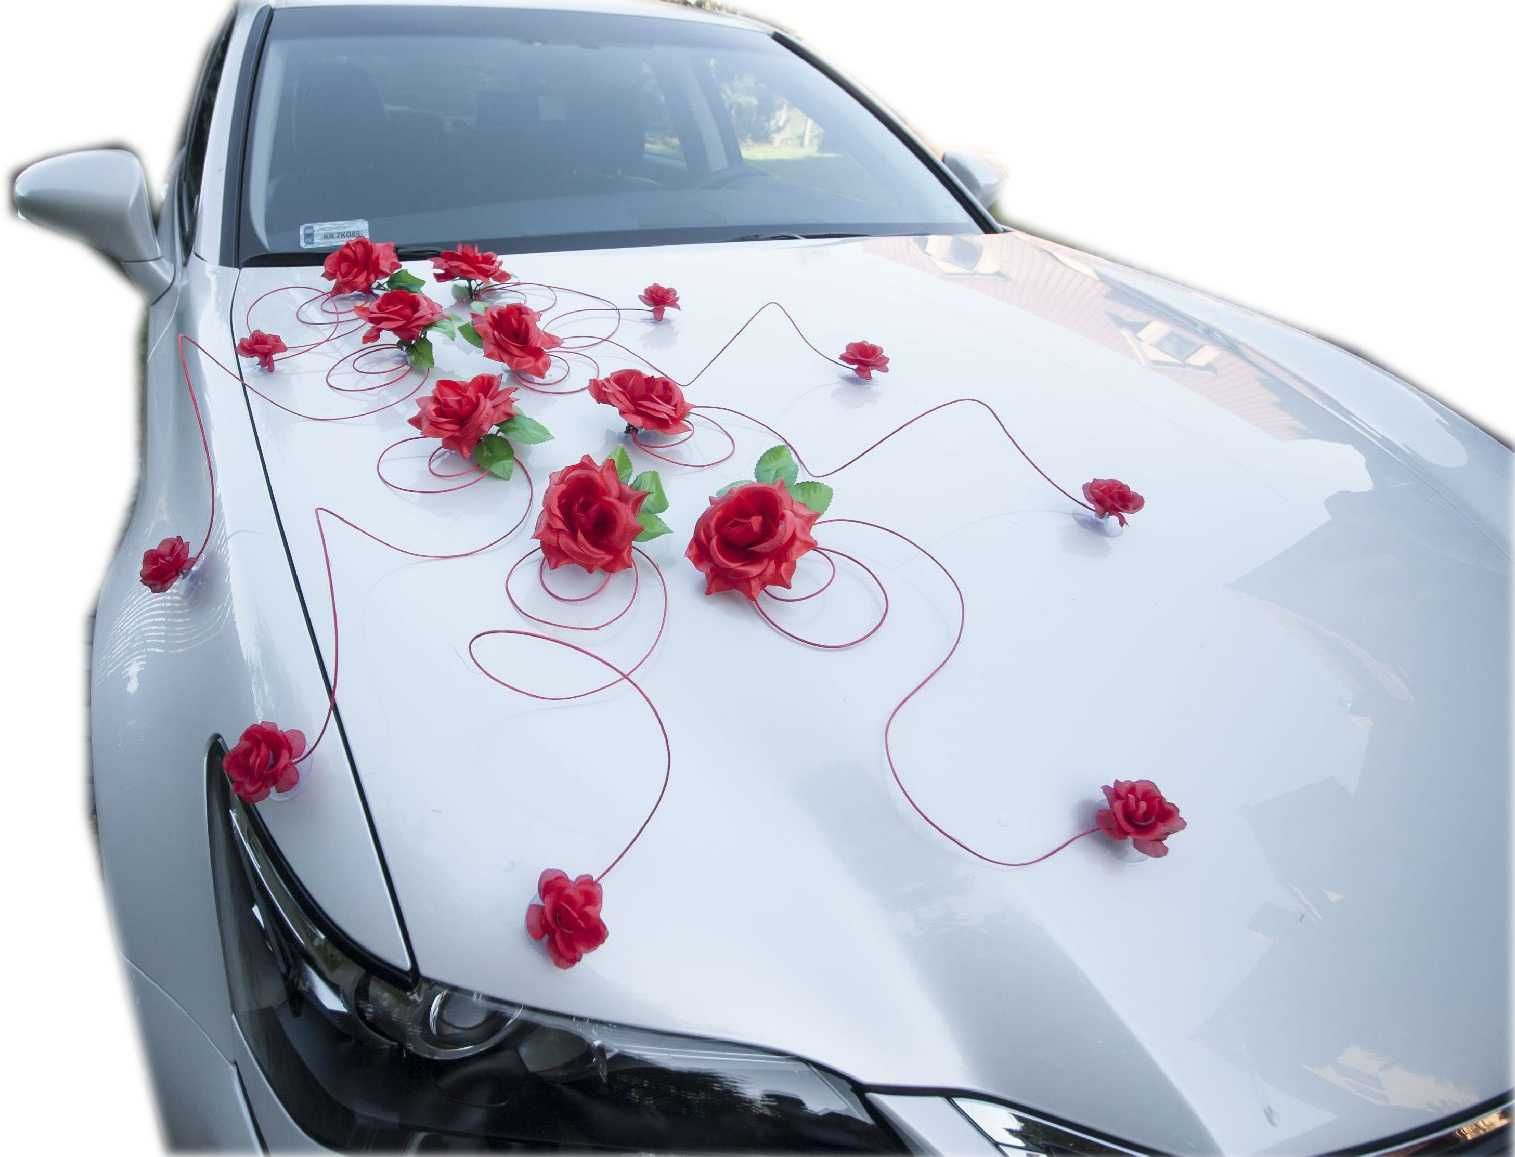 Dekoracja na samochód czerwona dekoracja auta ślubnego.KOLORY 197